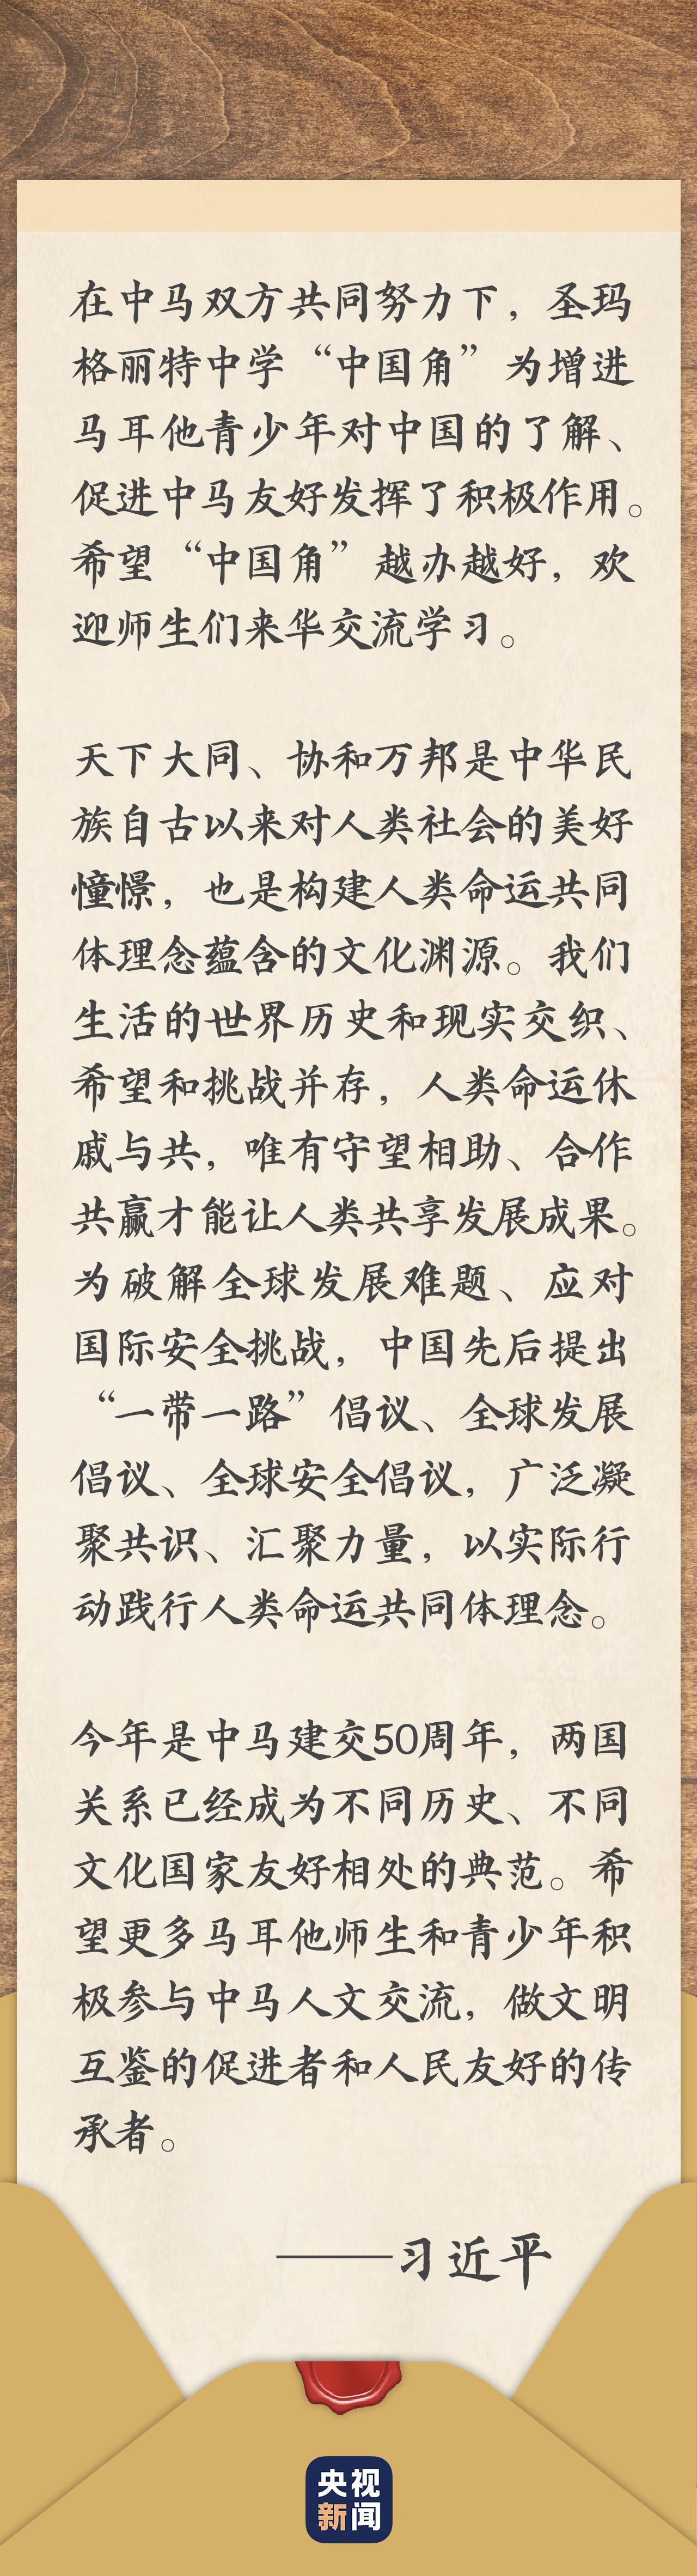 习近平给“中国好人”李培生胡晓春的回信